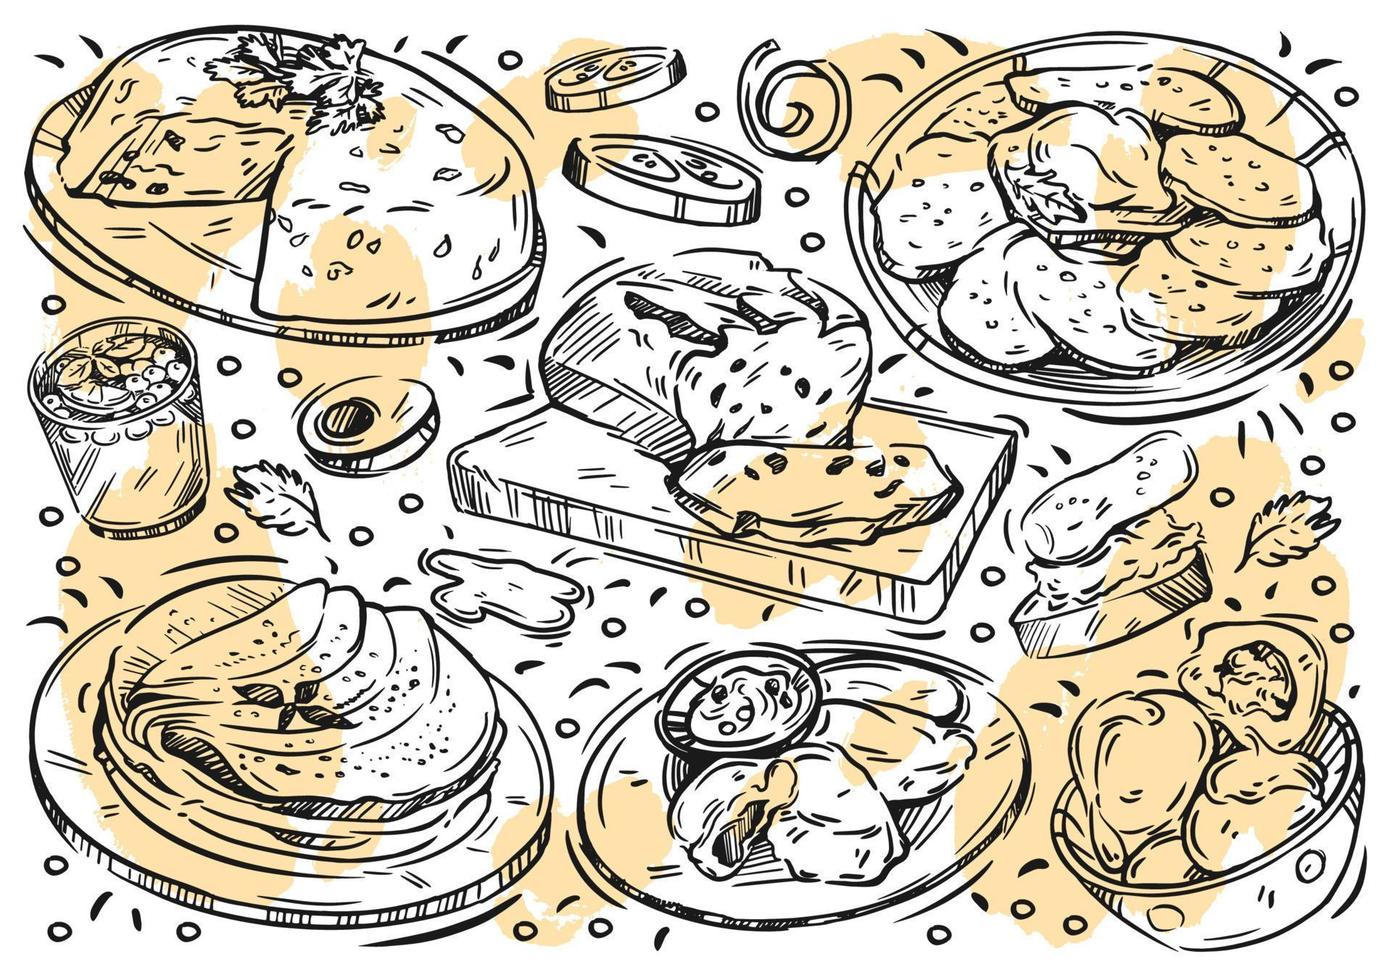 linea disegnata a mano illustrazione vettoriale cibo su sfondo bianco. doodle cucina bielorussa, kletski, frittelle, babka, draniki, bevanda alla frutta, gnocchi, bruschette, cetriolo, pane